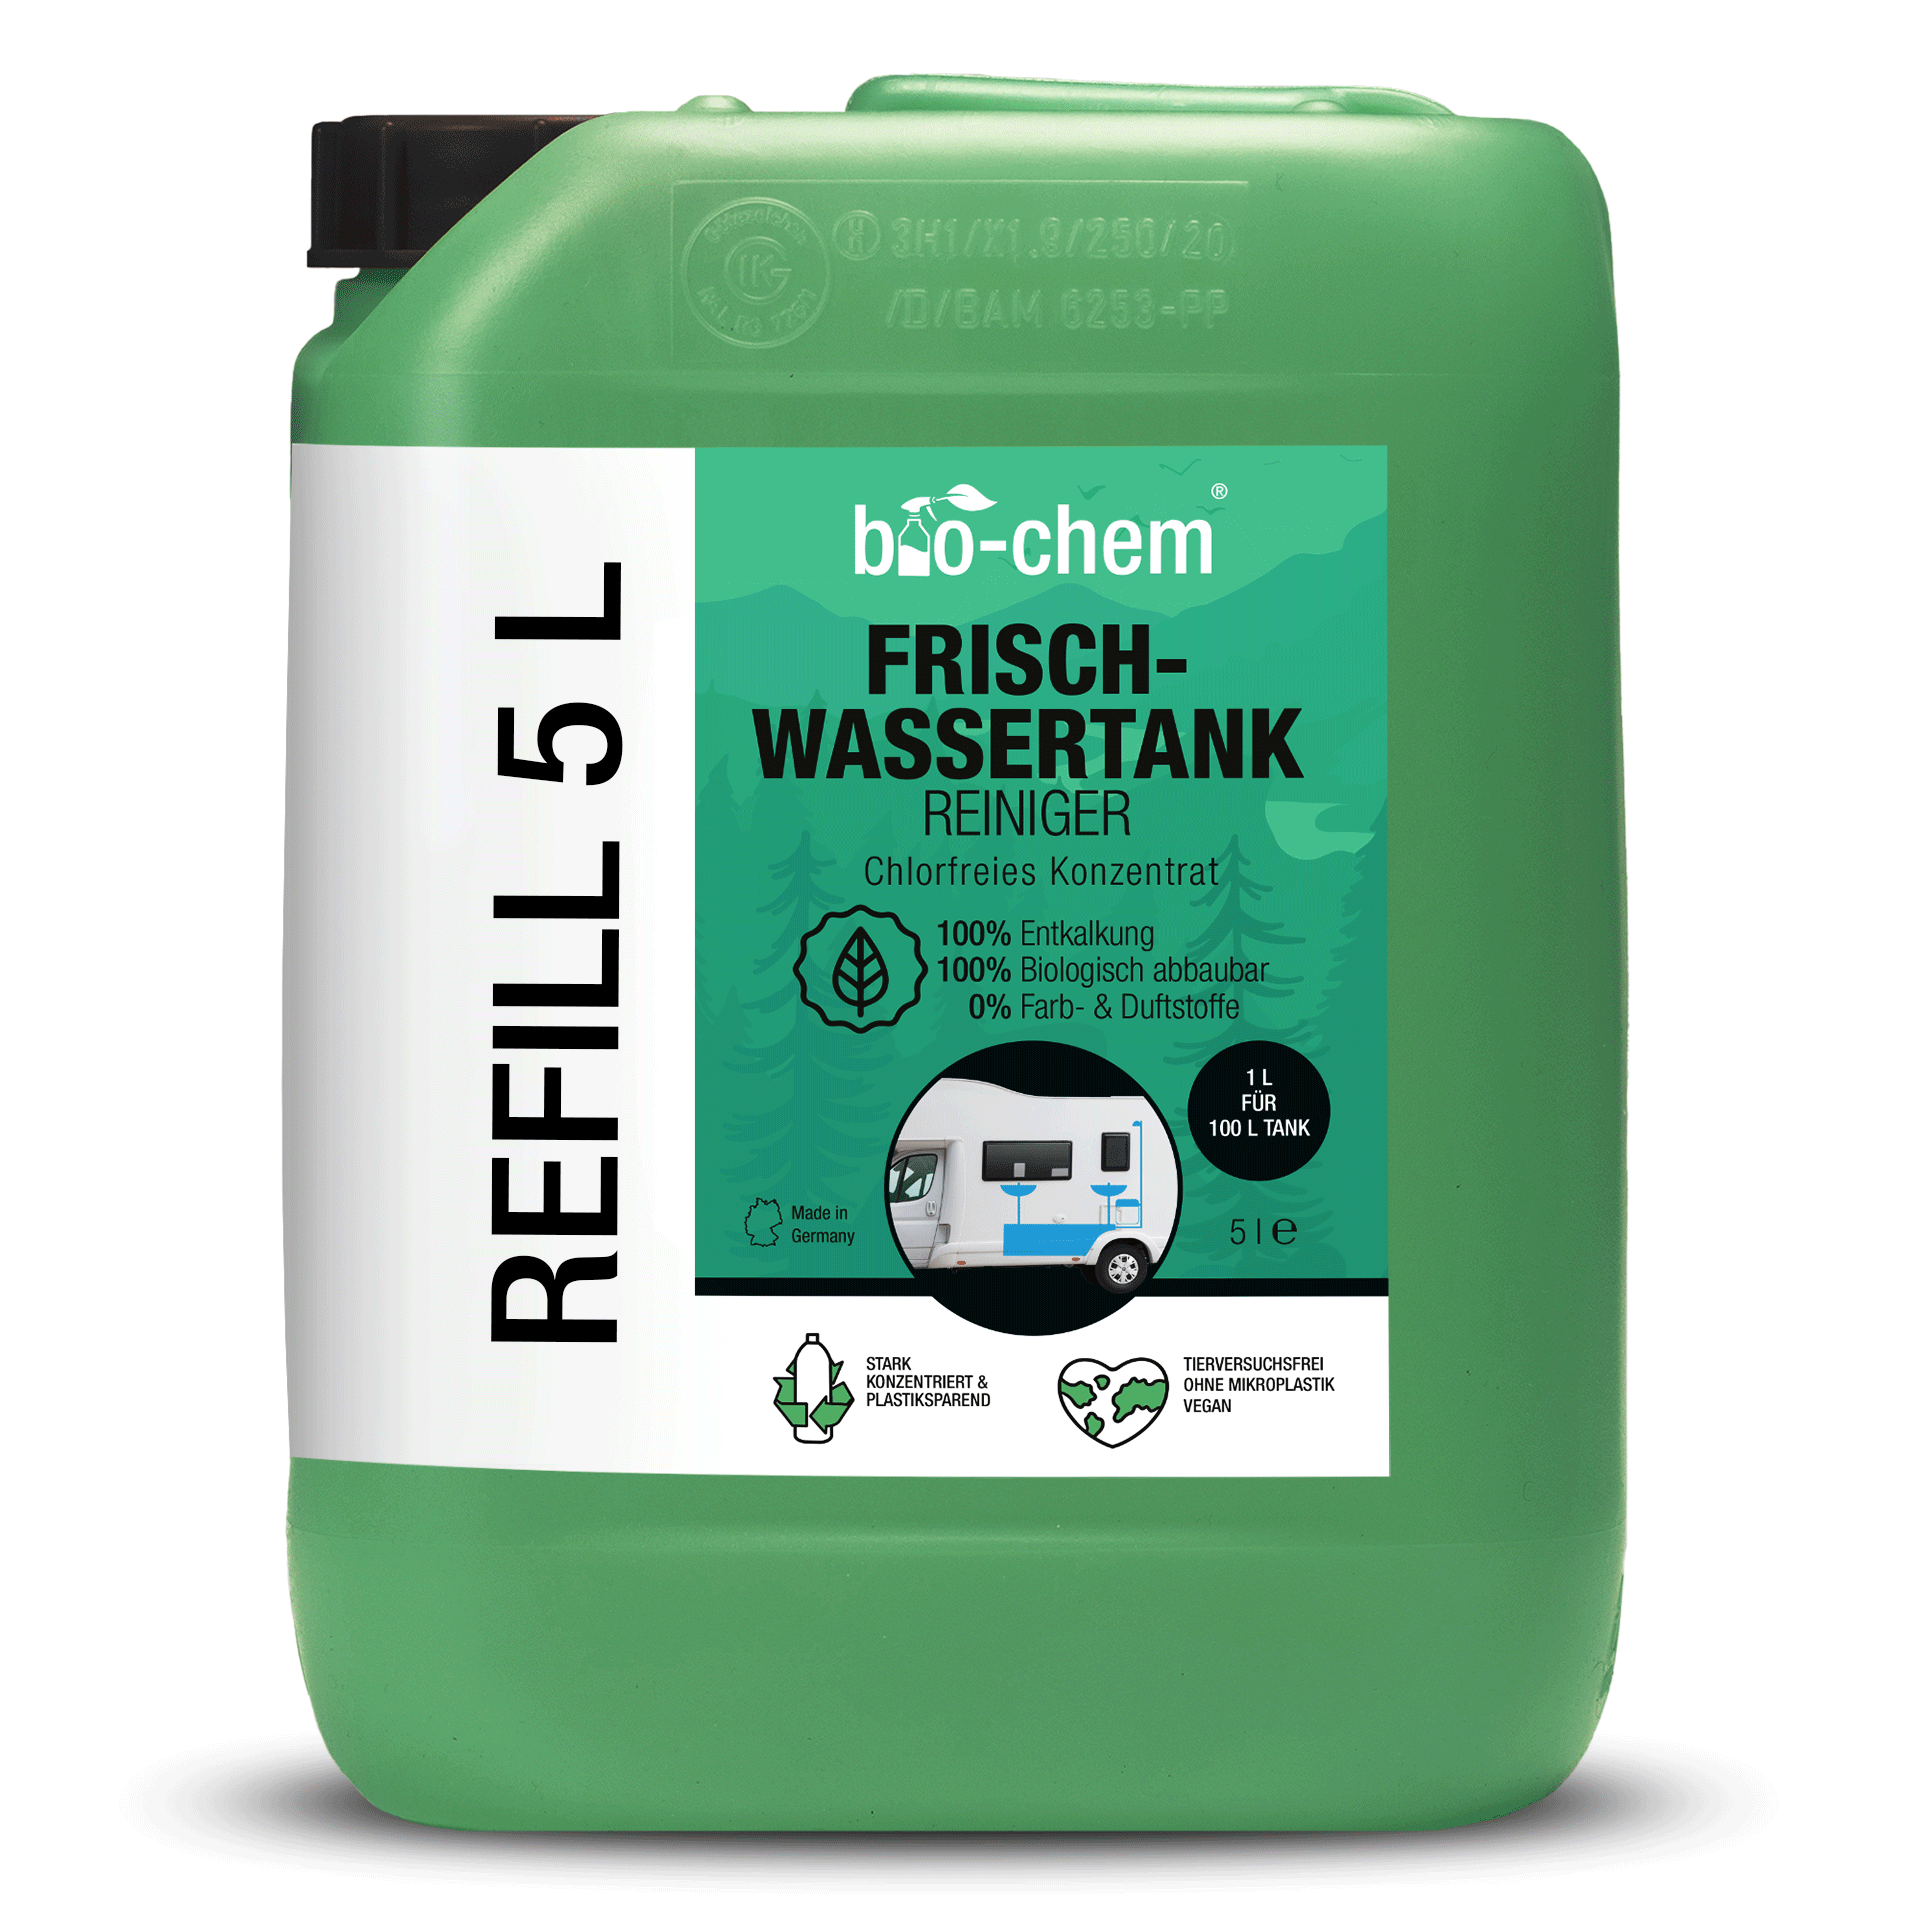 Produktbild 5 Liter Kanister Frischwassertank-Reiniger der Marke bio-chem